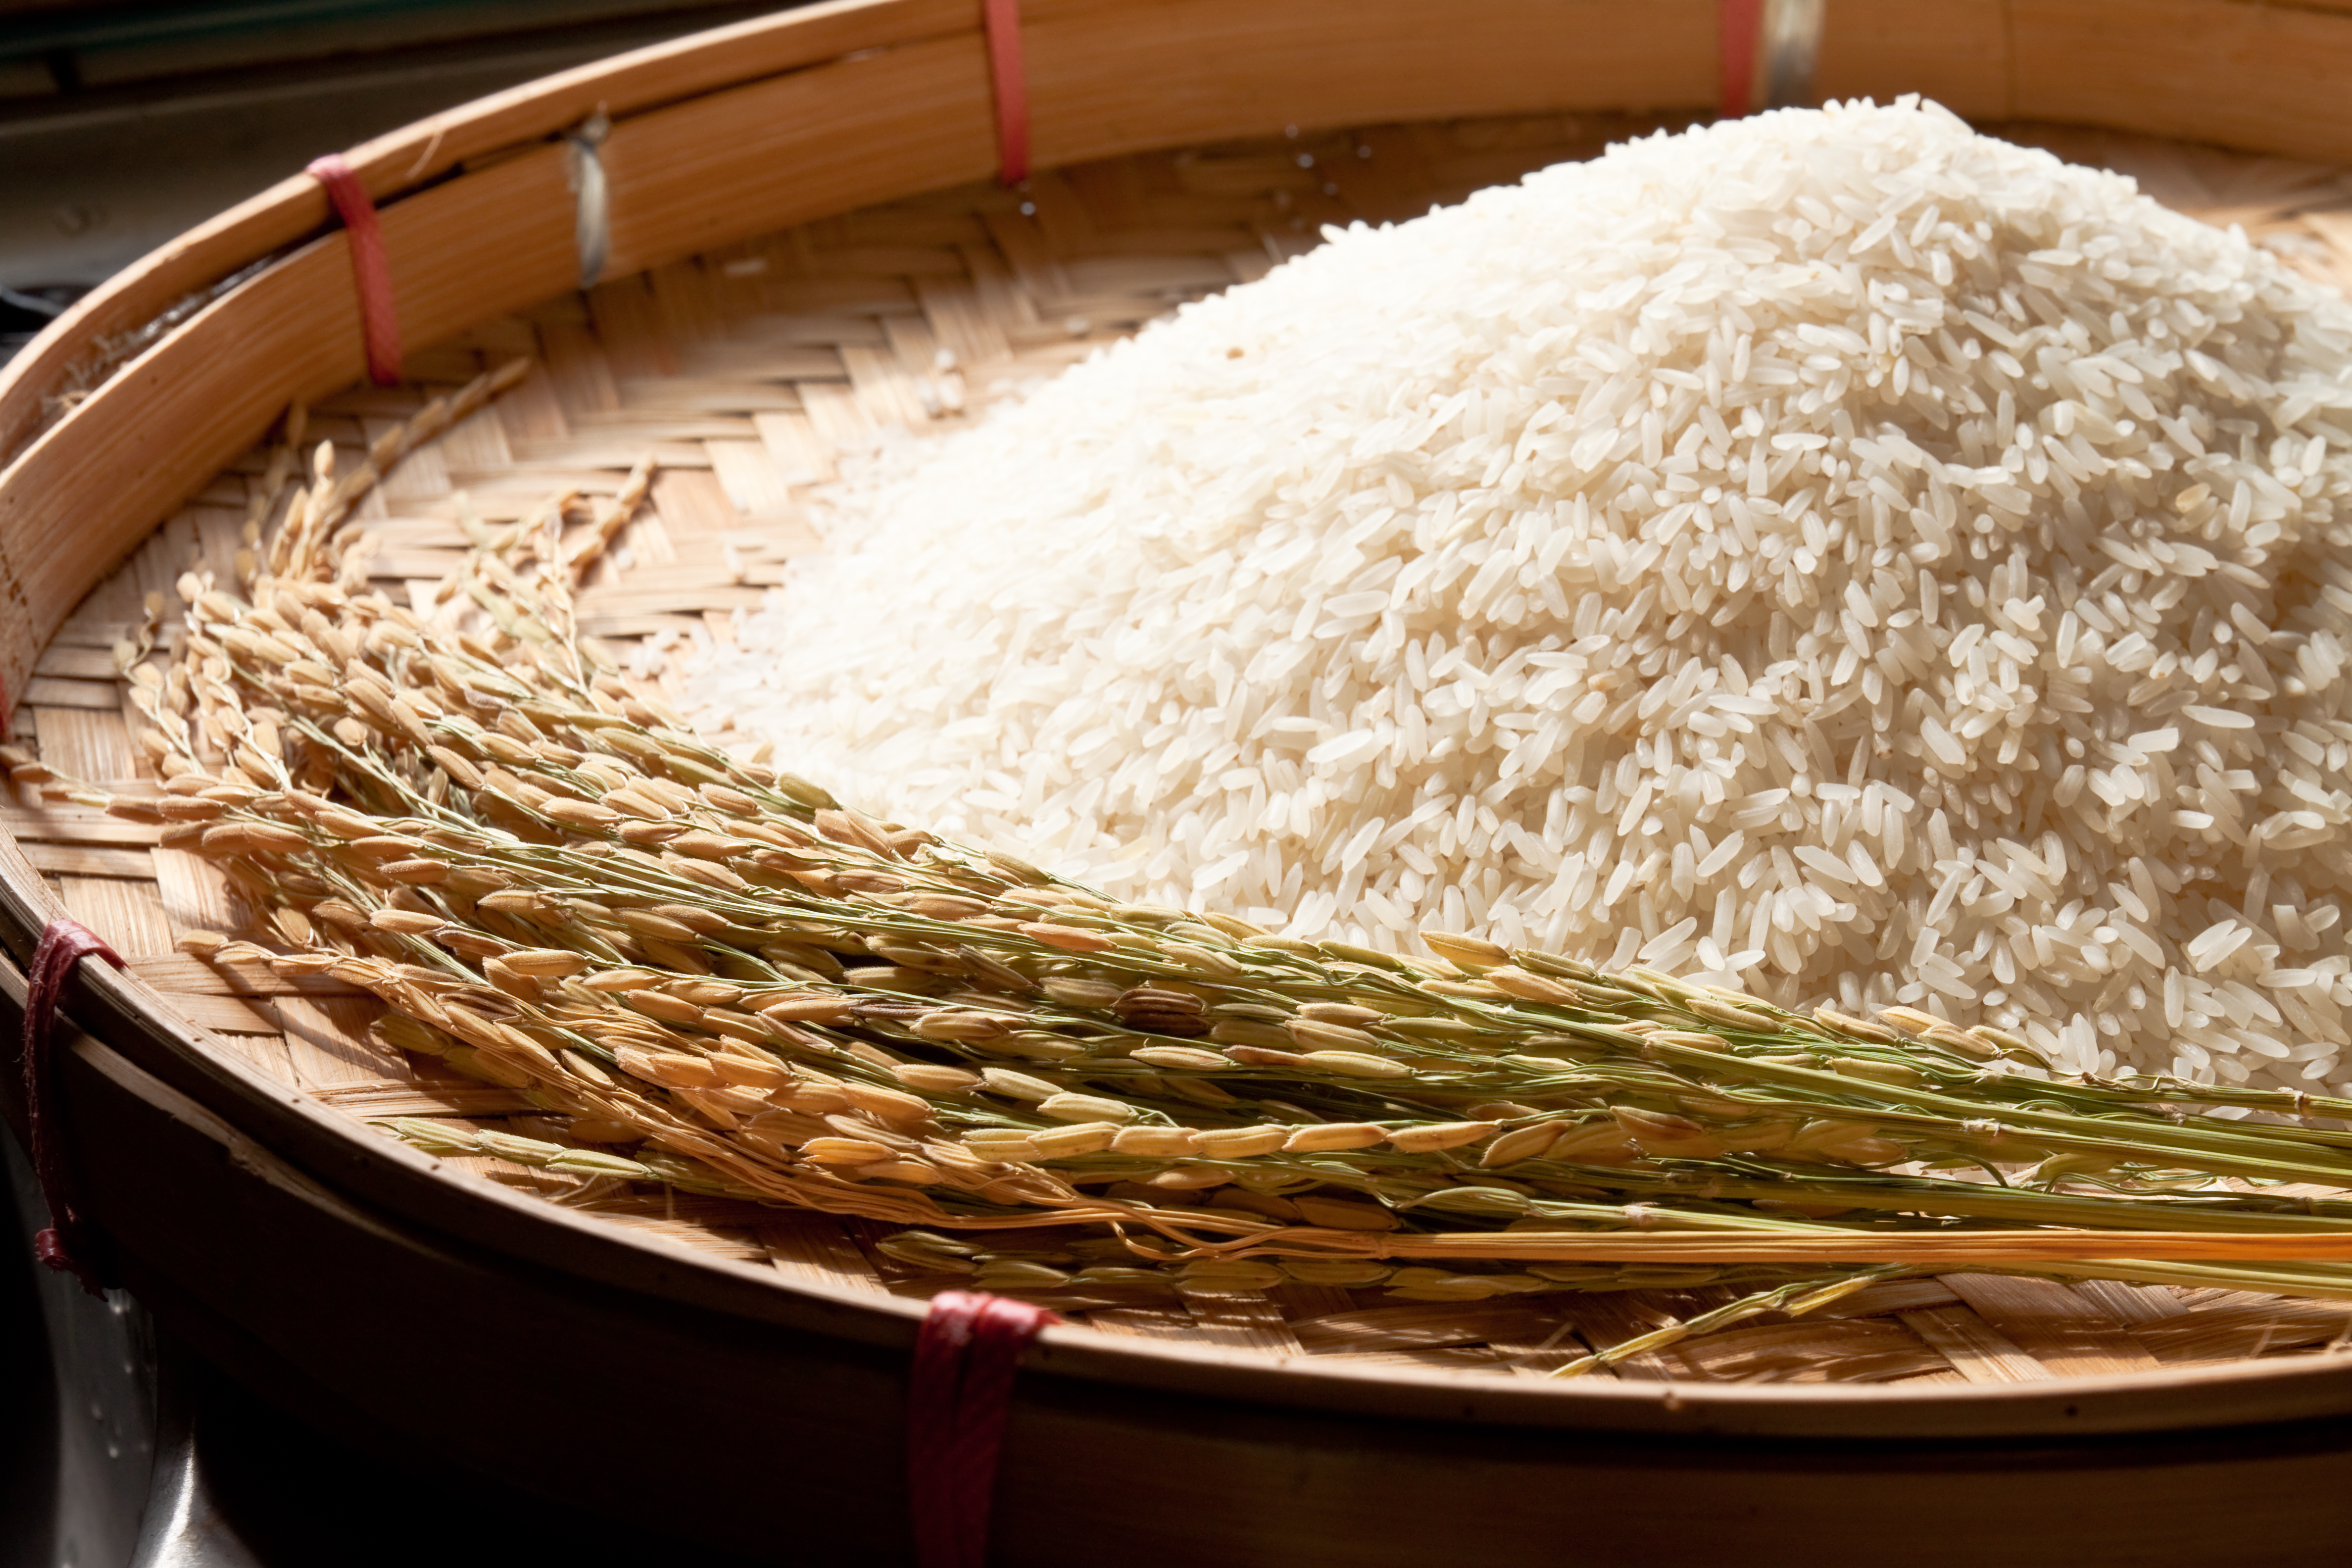 야생에서 채취를 한 벼와 벼의 껍질을 벗겨서 속에 하얀 알맹이만 빼낸 쌀을 나무로 만든 동그란 소쿠리에 같이 수북하게 쌓아놓고 찍은 사진